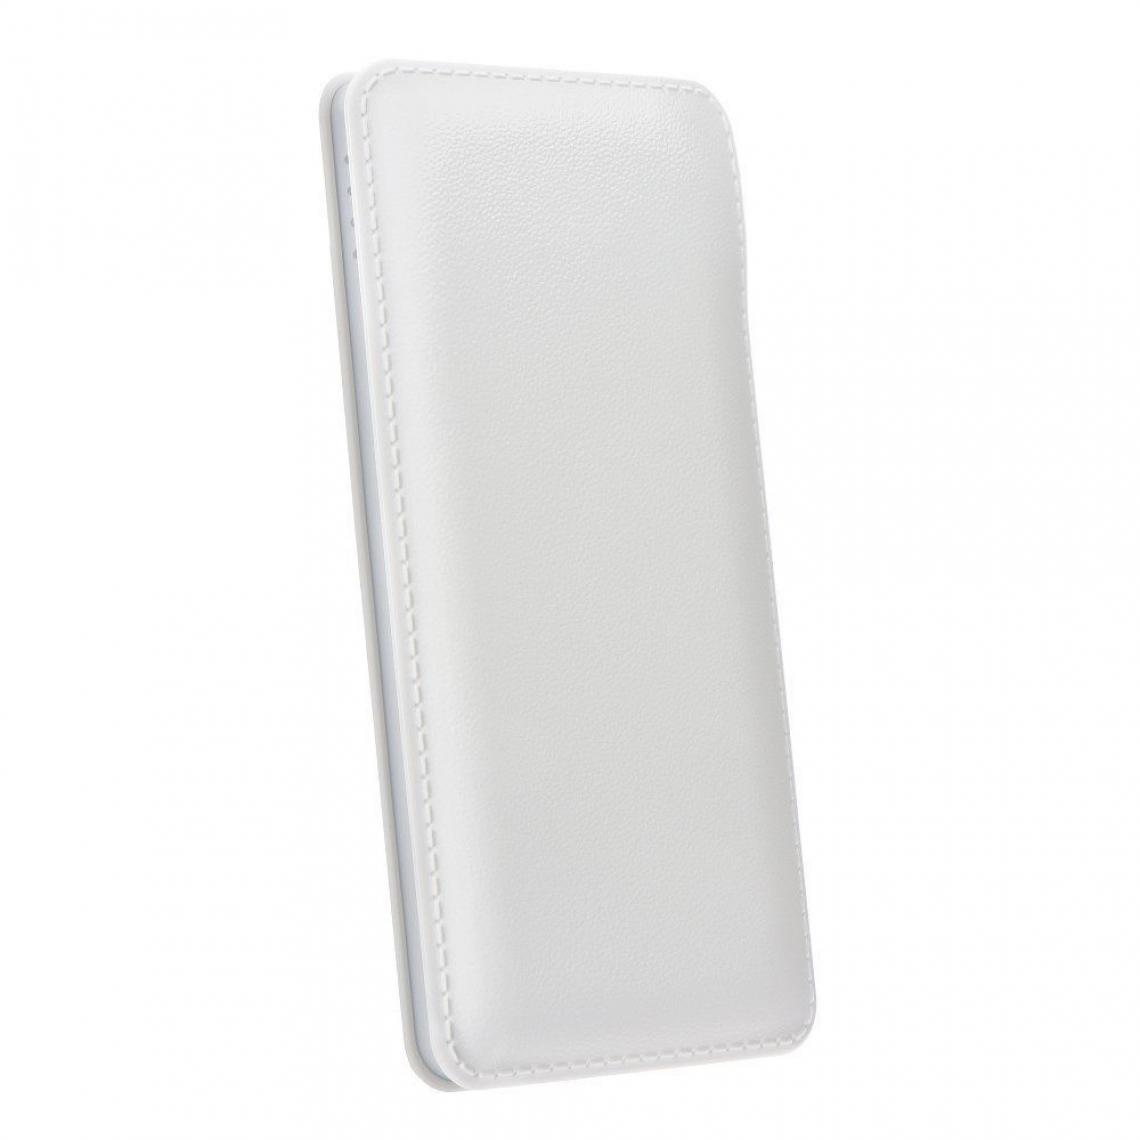 Ozzzo - Chargeur batterie externe 20000 mAh powerbank ozzzo blanc pour Apple iPhone 12 - Autres accessoires smartphone